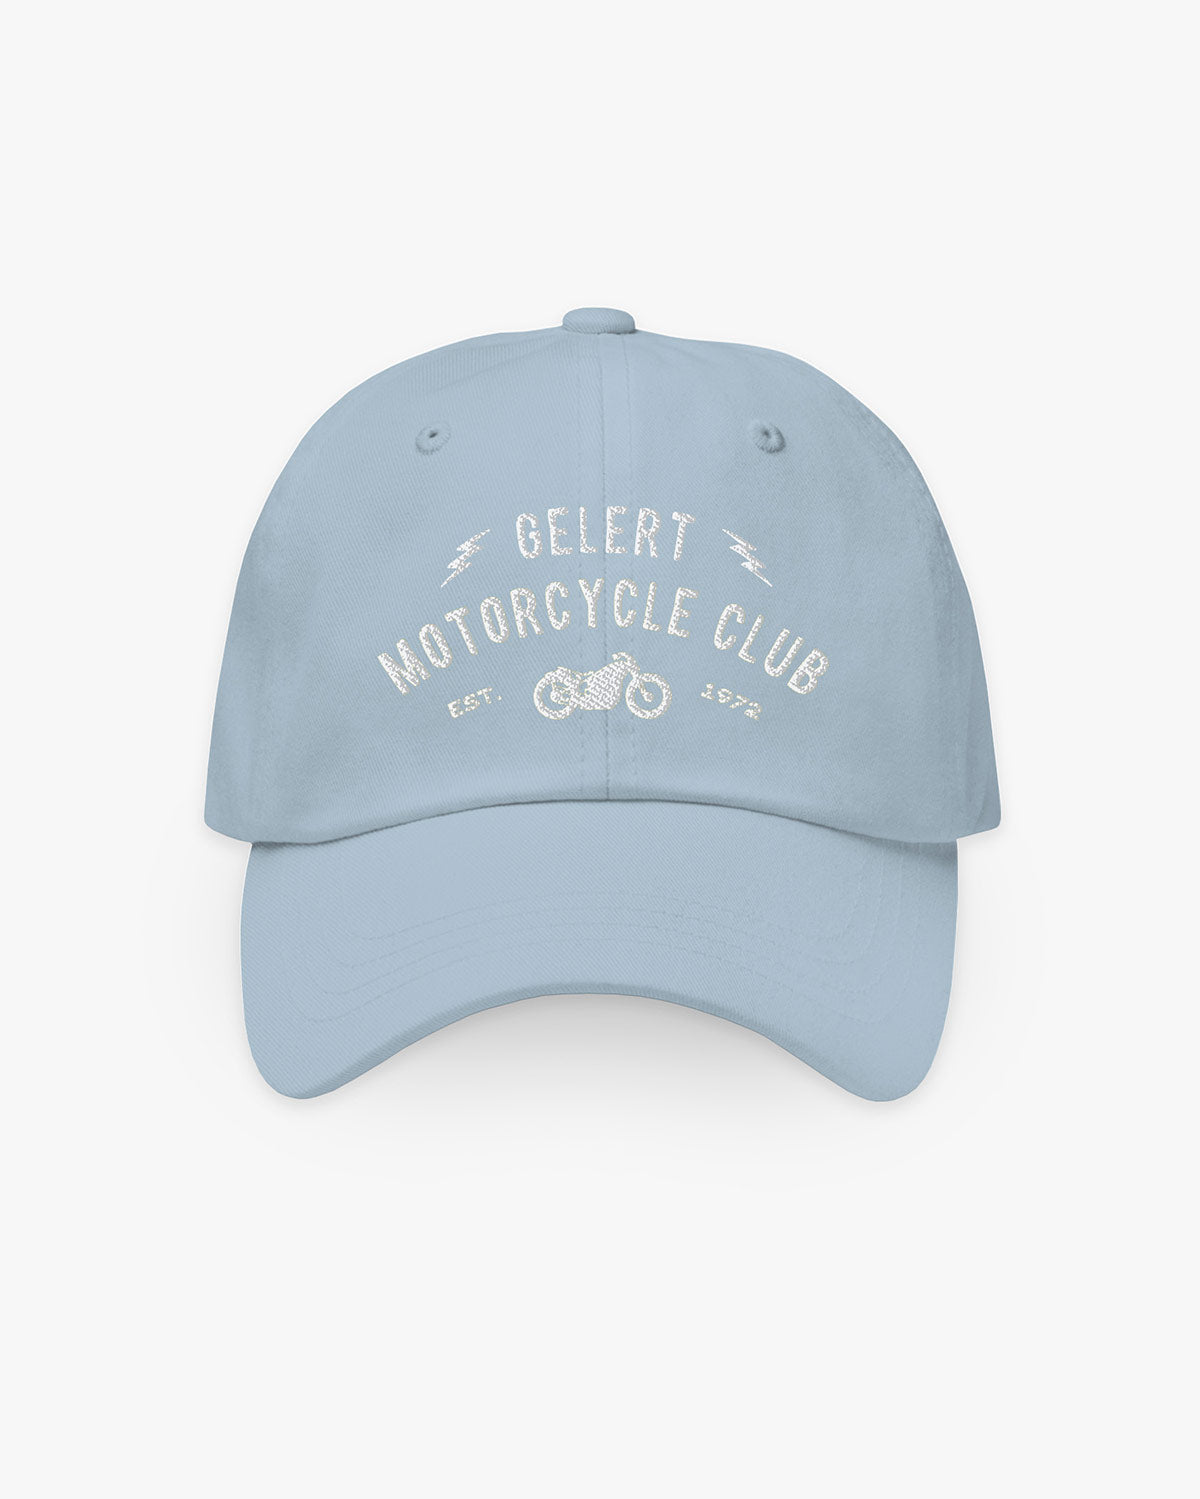 Motorcycle Club - Gelert - Hat